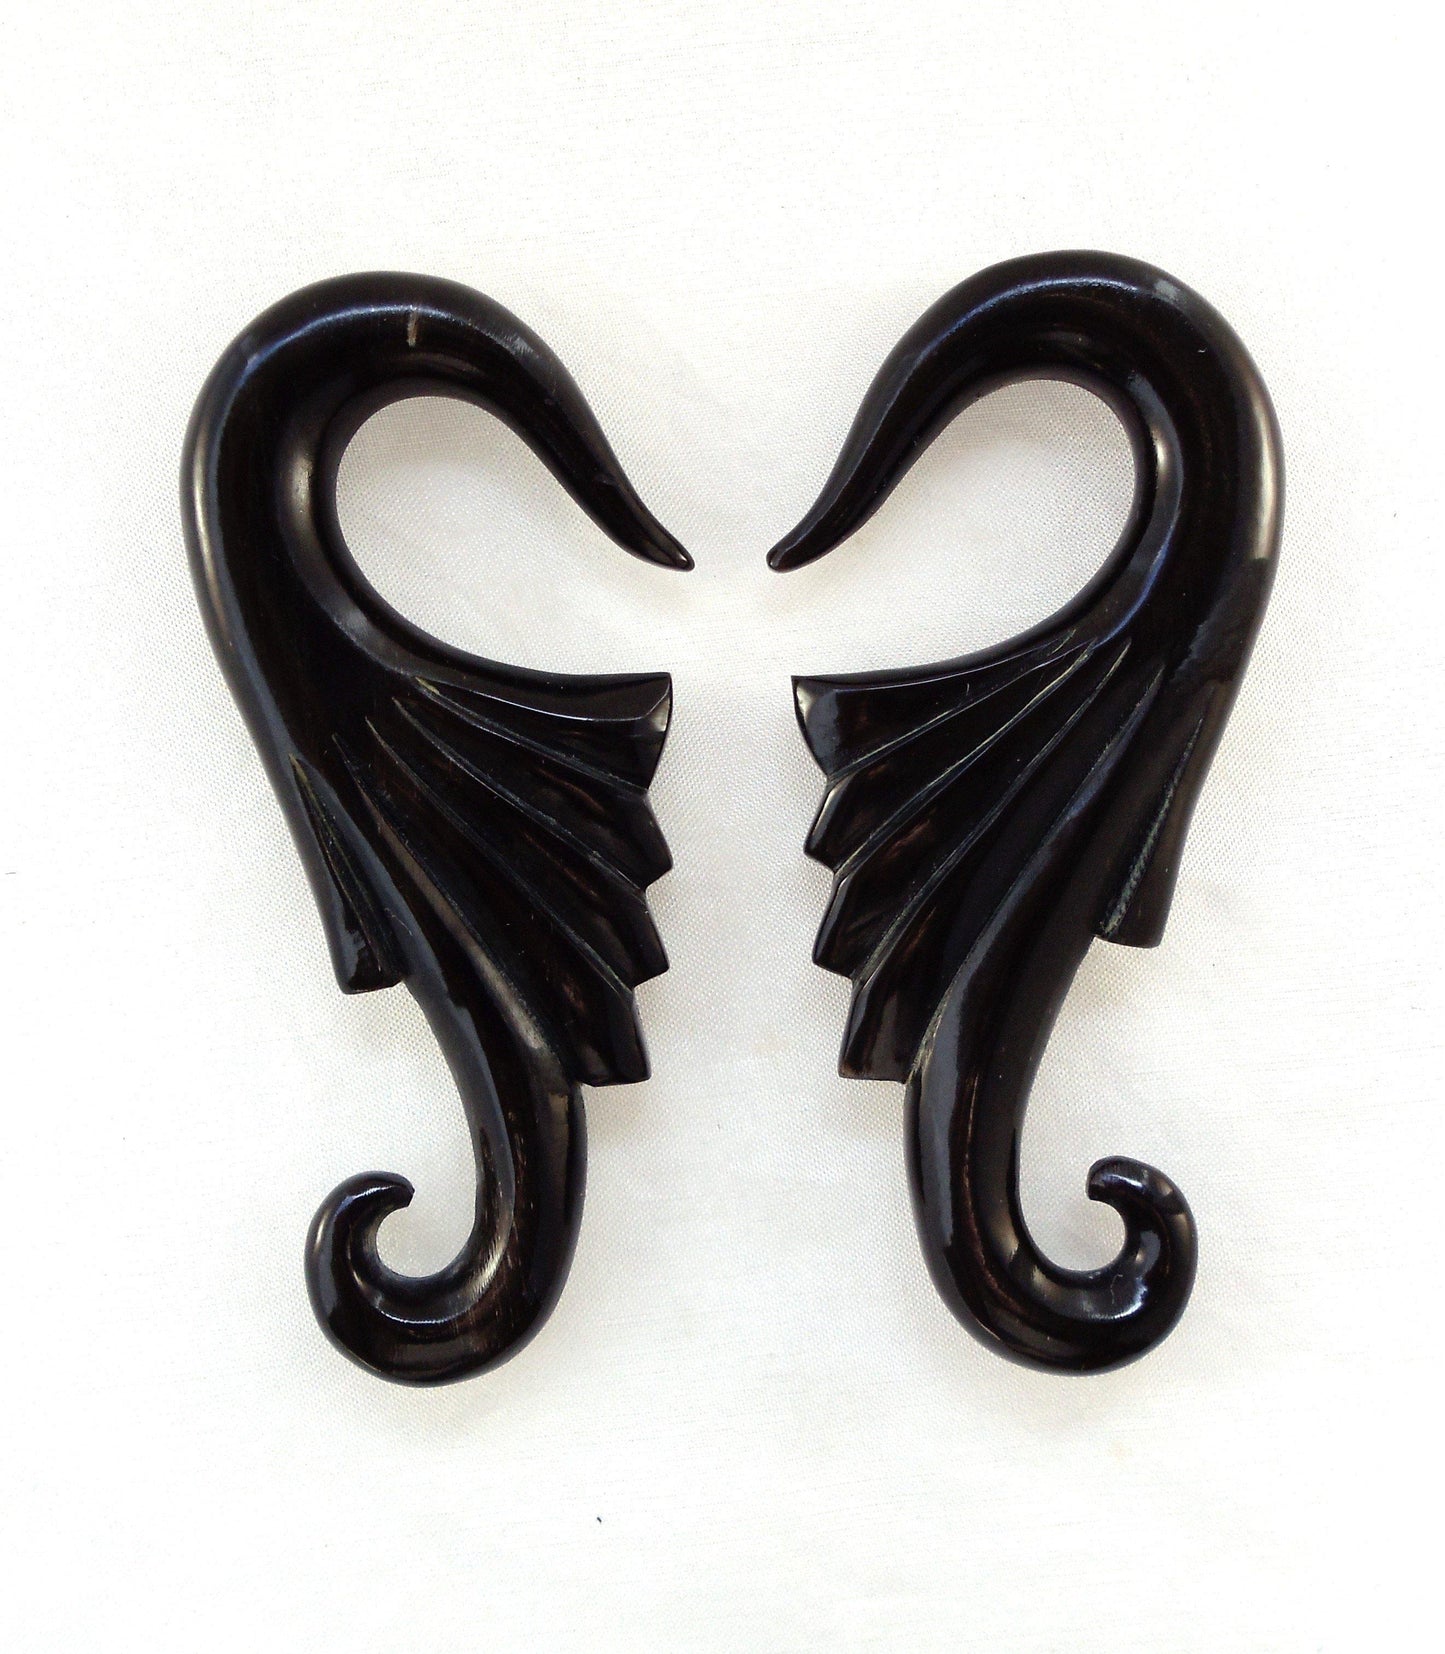 Gauges :|: Wings, 0 gauge earrings, black. 1 1/8 inch W X 2 5/8 inch L.